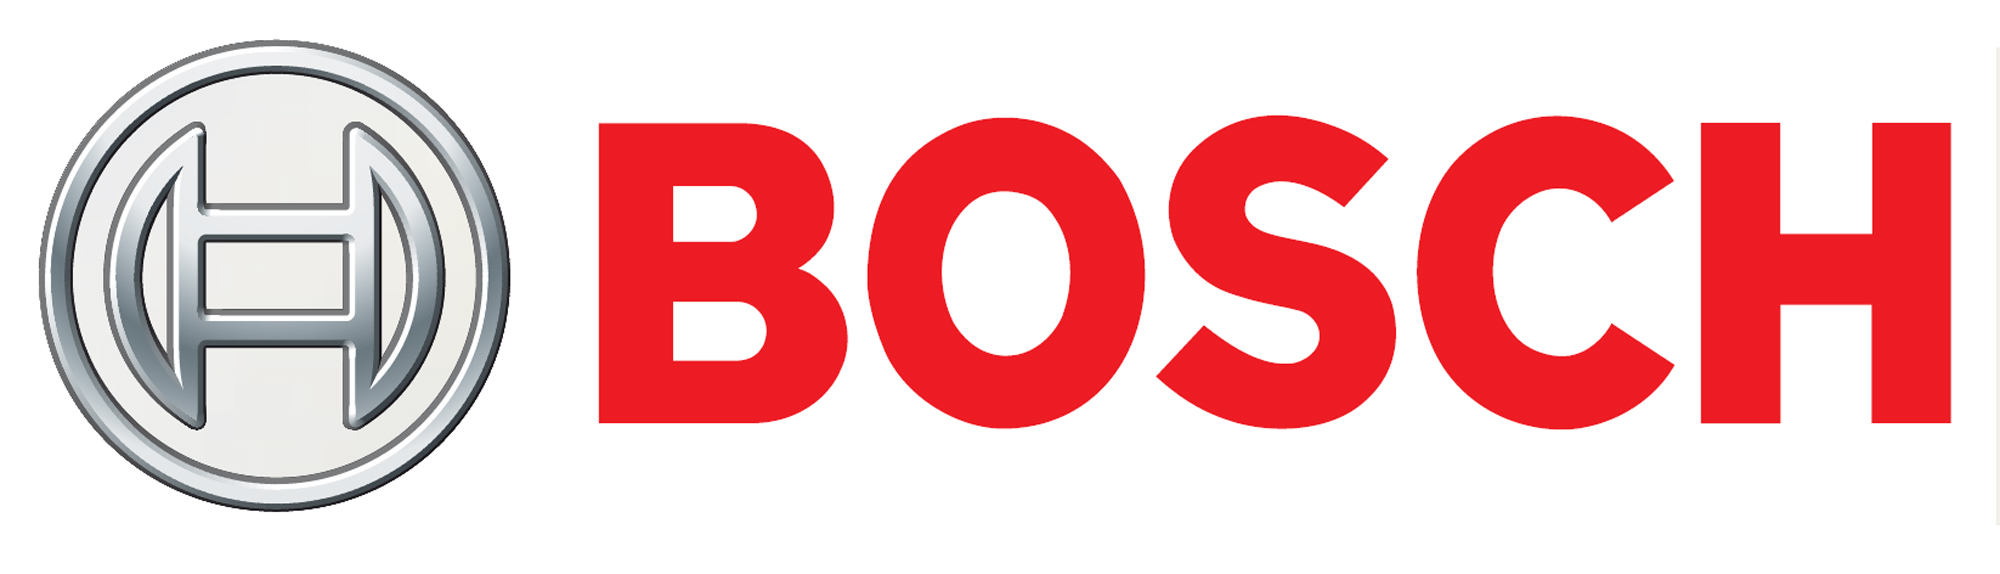 Bosch Appliance Repair Montreal 